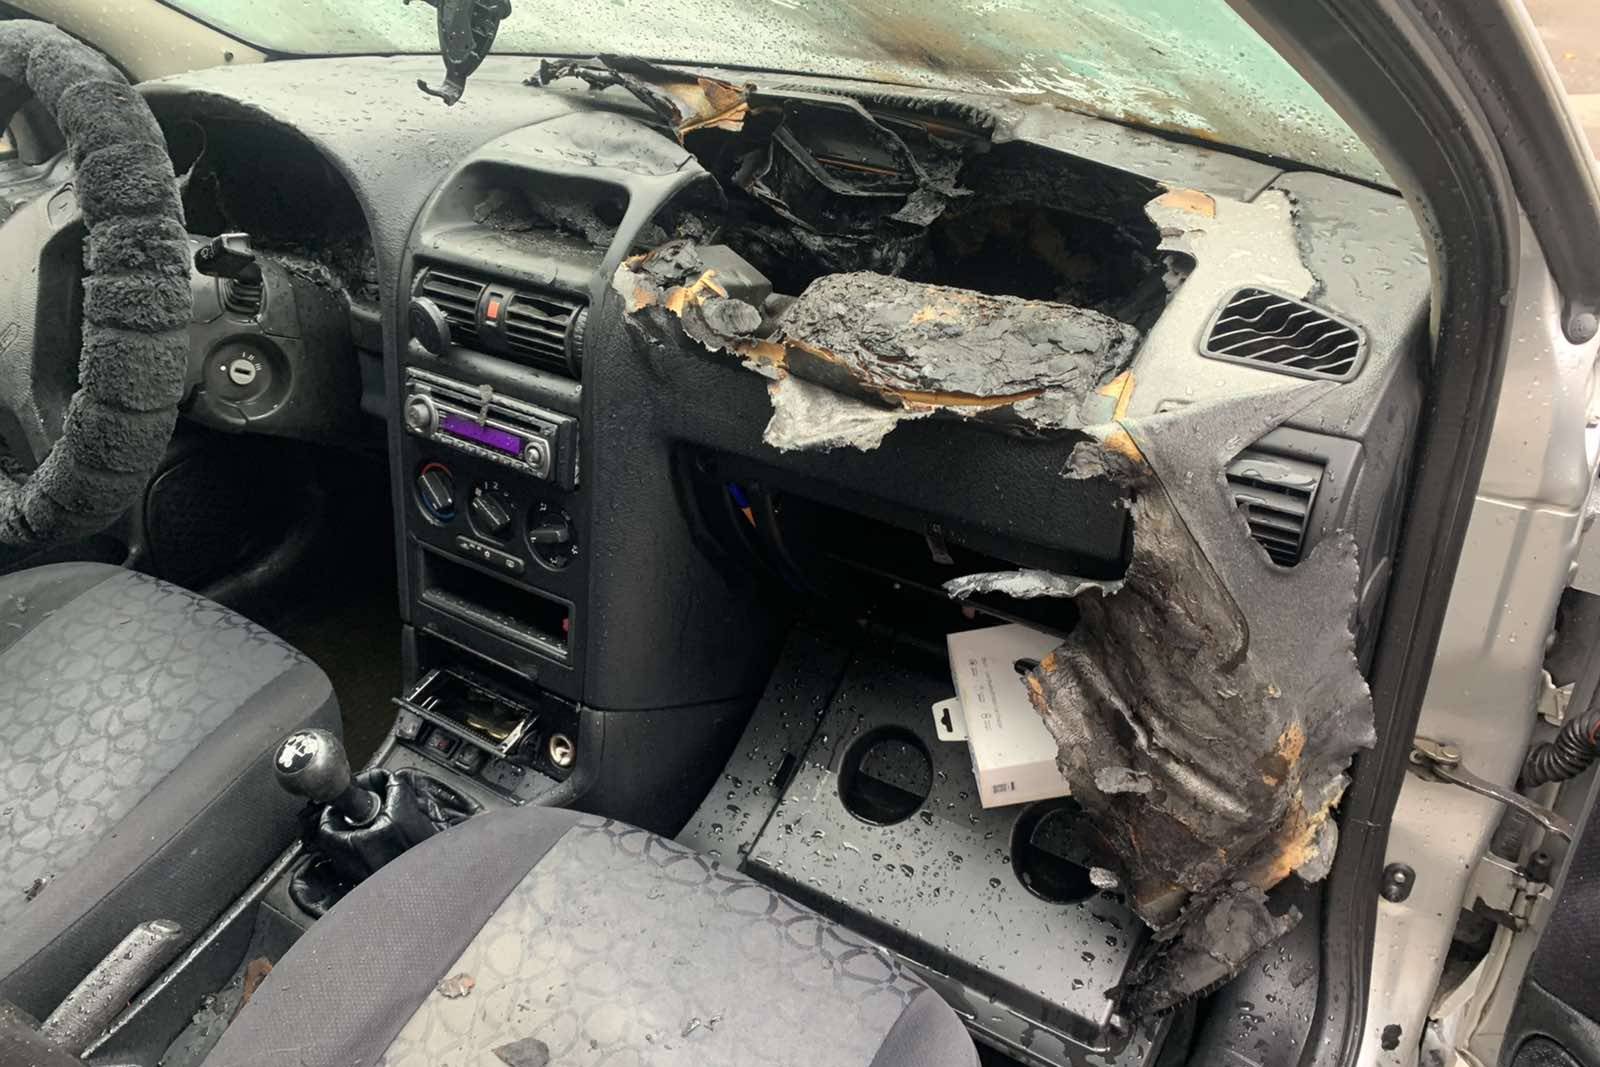 В Харькове снова горел автомобиль